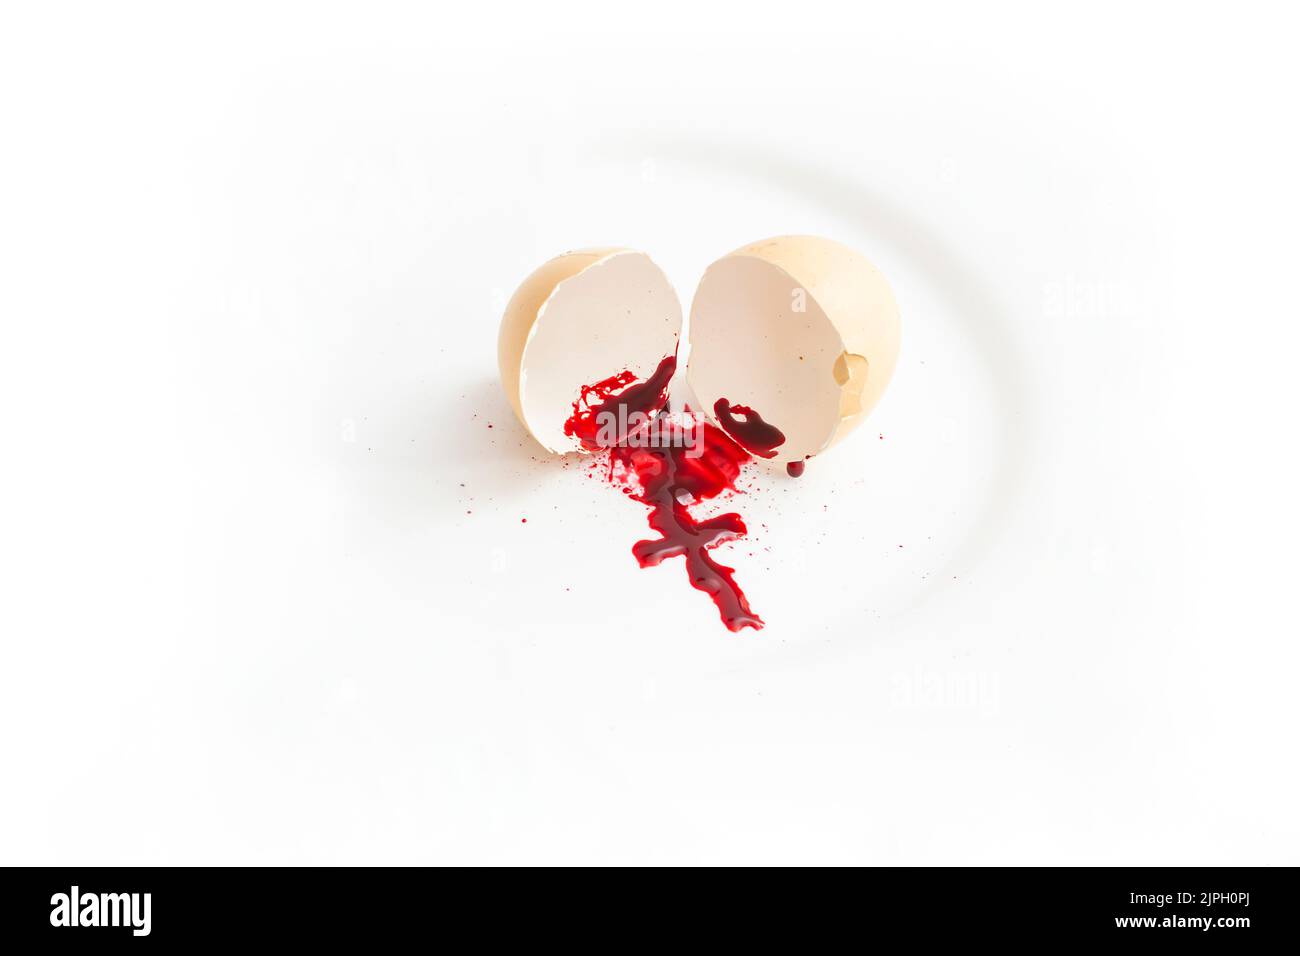 Eierschale mit Blutspur, die ein Kruzifix bildet. Abtreibung metaphorisches Konzept. Stockfoto